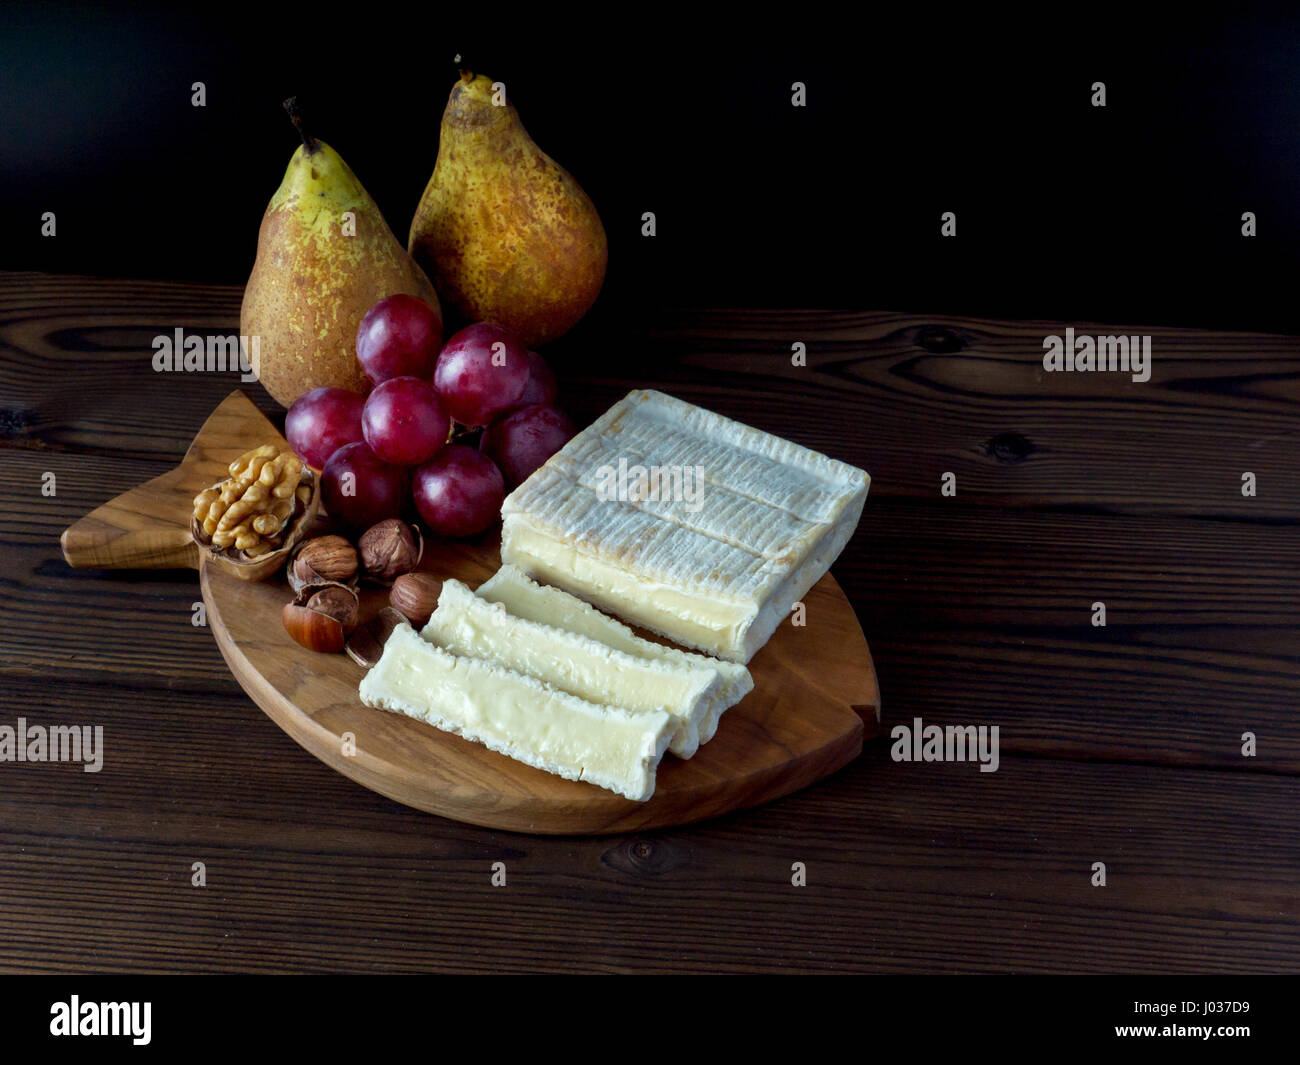 A forma di mattone di formaggio con muffa bianca, nocciole, noci, rosso uva e pere sulla trama della scheda in legno Foto Stock